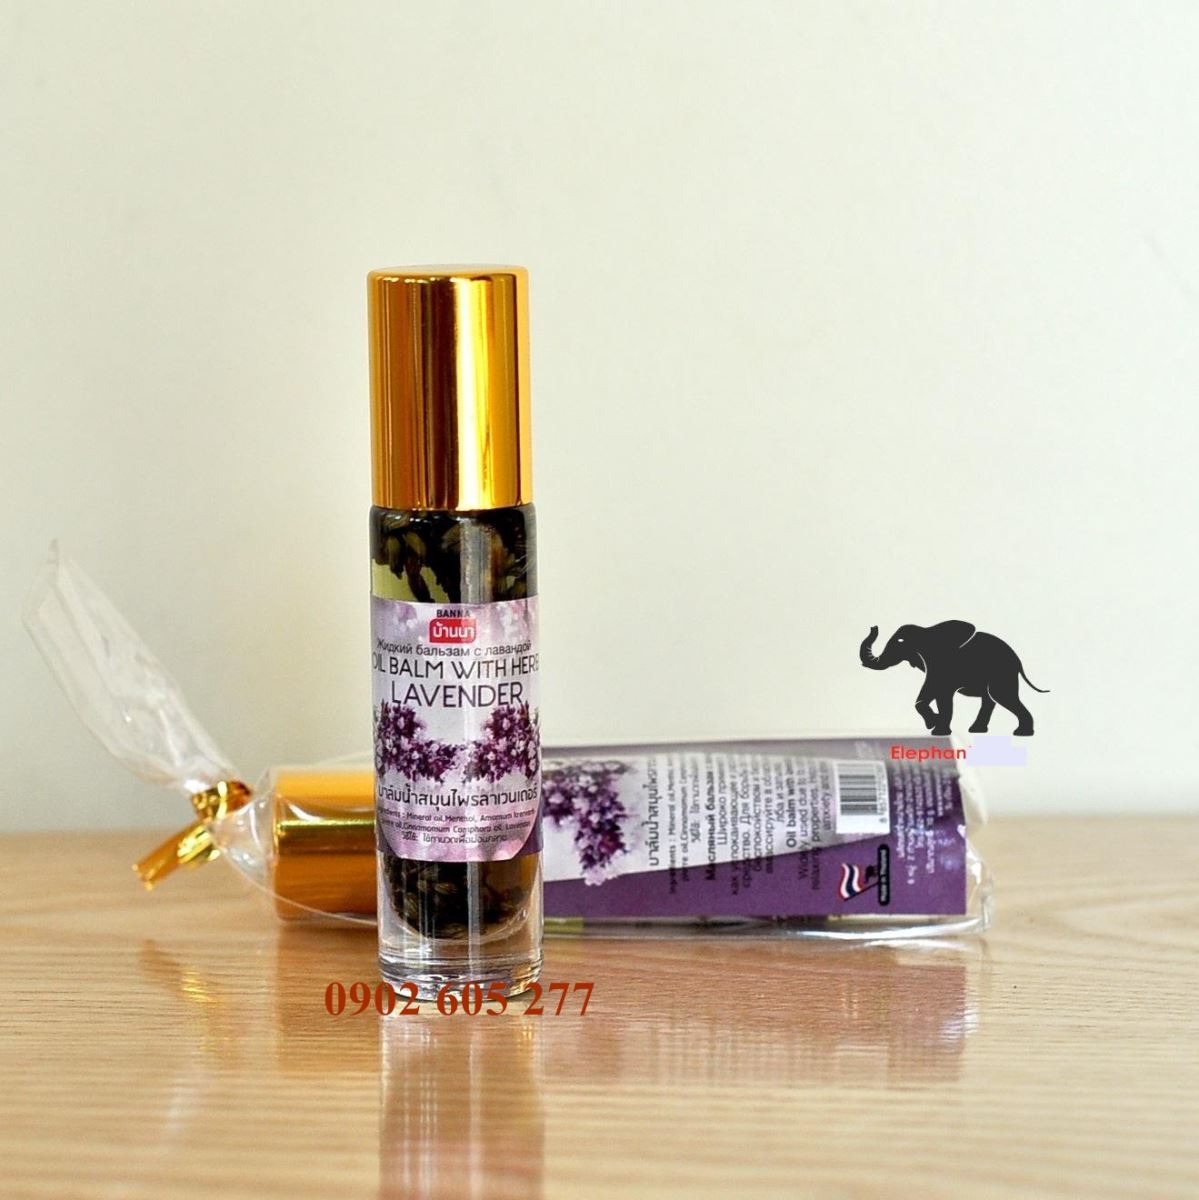 Công dụng của dầu lăn thảo dược lavender – Cong dung cua dau lan thao duoc lavender